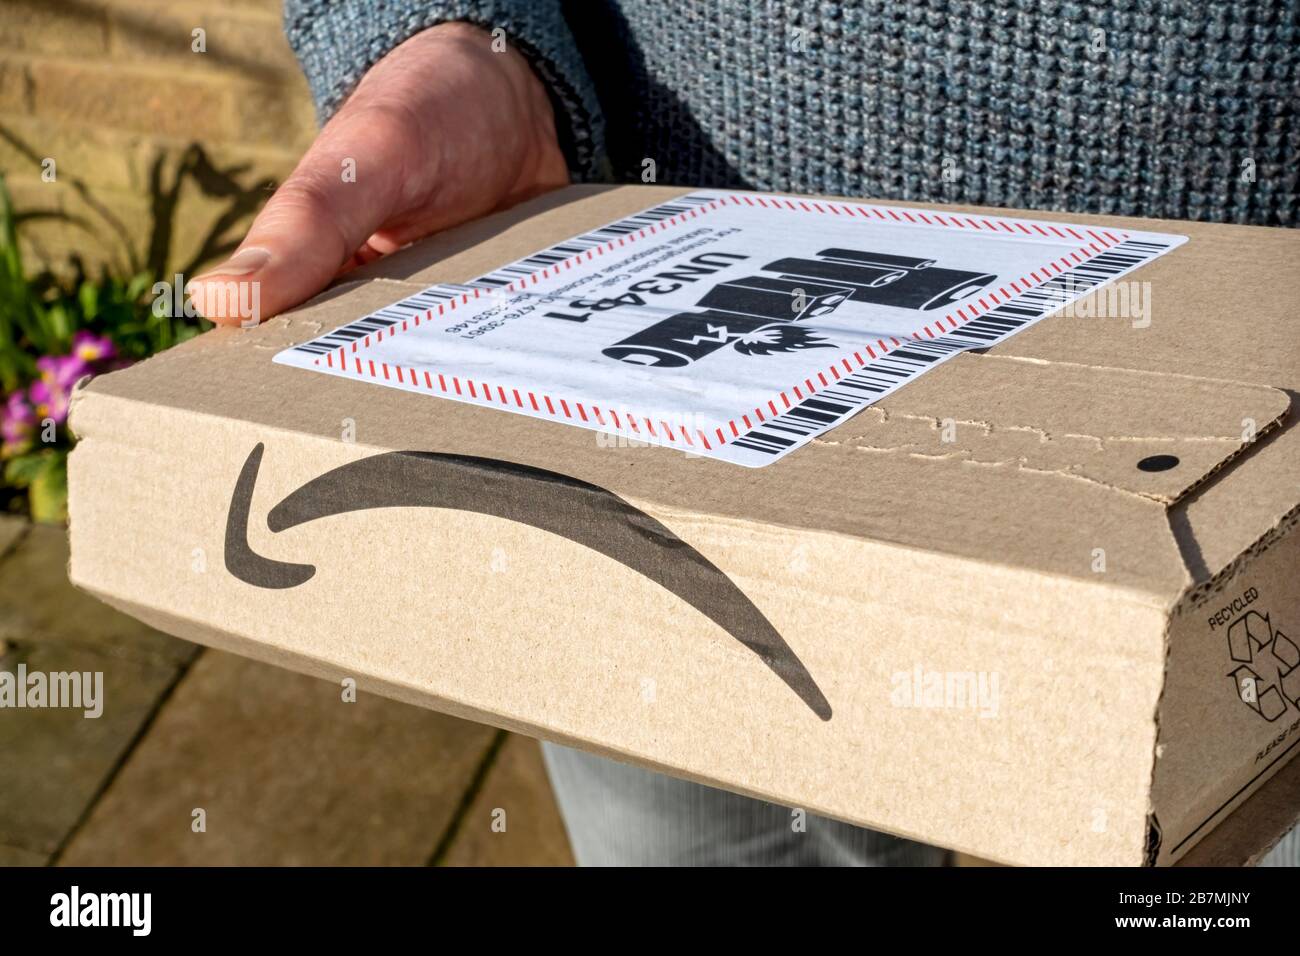 Mann trägt halten Online-Lieferung Amazon Box Paket Lieferung mit  Warnschild Lithium-Ionen-Batterie England Großbritannien GB Großbritannien  Stockfotografie - Alamy